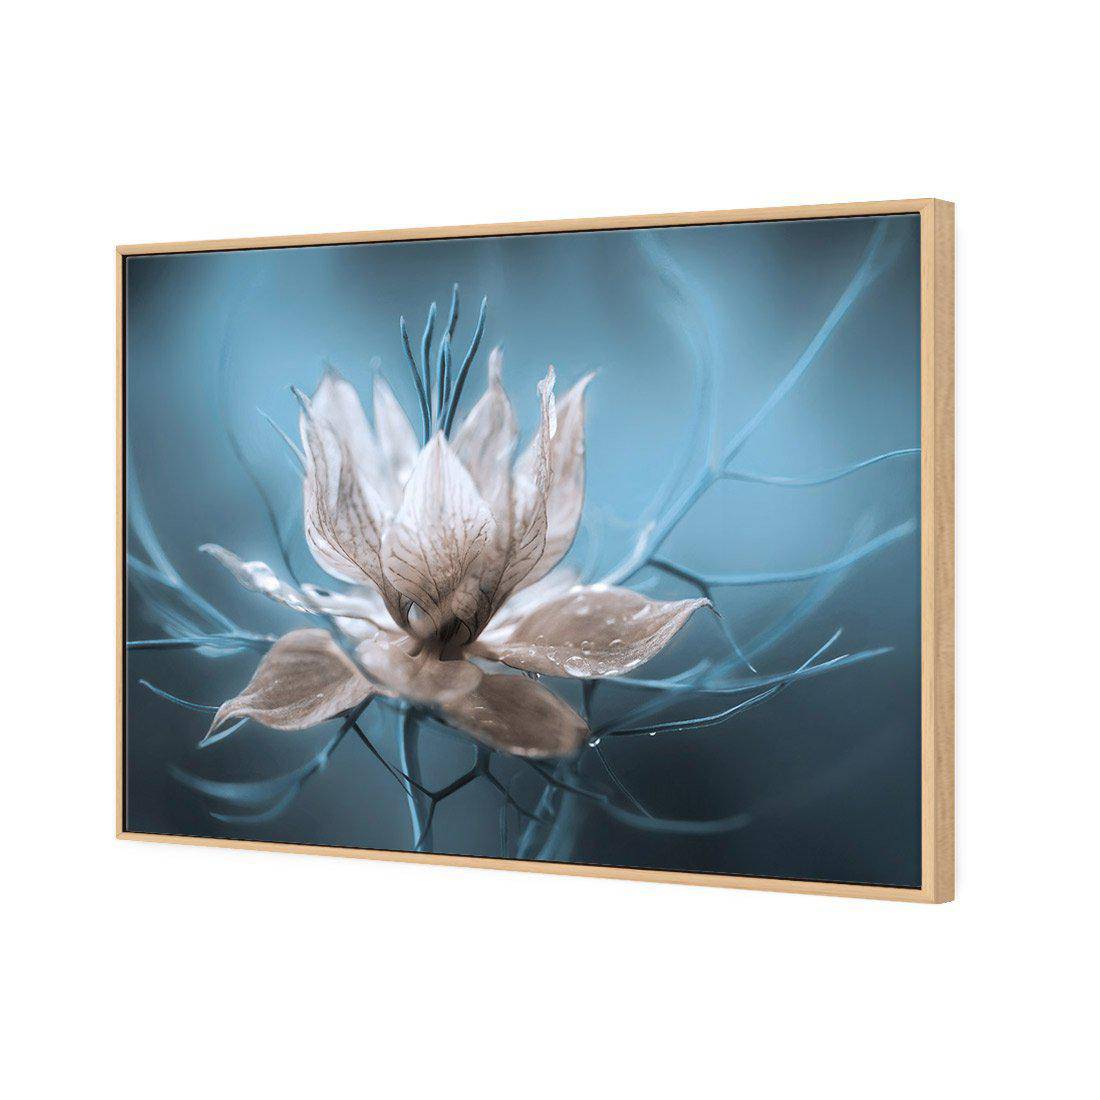 Nigella by Mandy Disher Canvas Art-Canvas-Wall Art Designs-45x30cm-Canvas - Oak Frame-Wall Art Designs